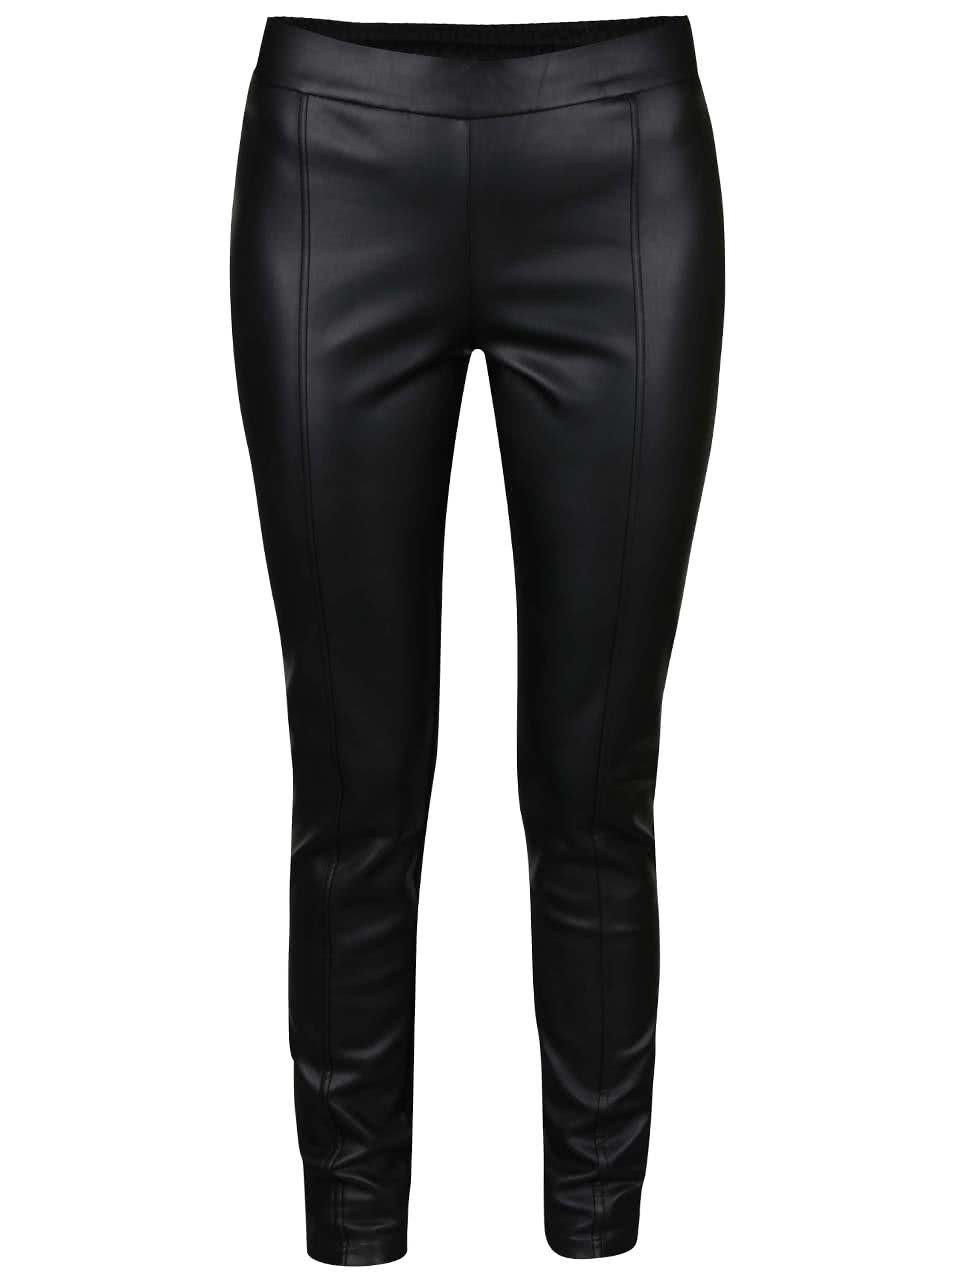 Černé koženkové kalhoty Vero Moda Canti